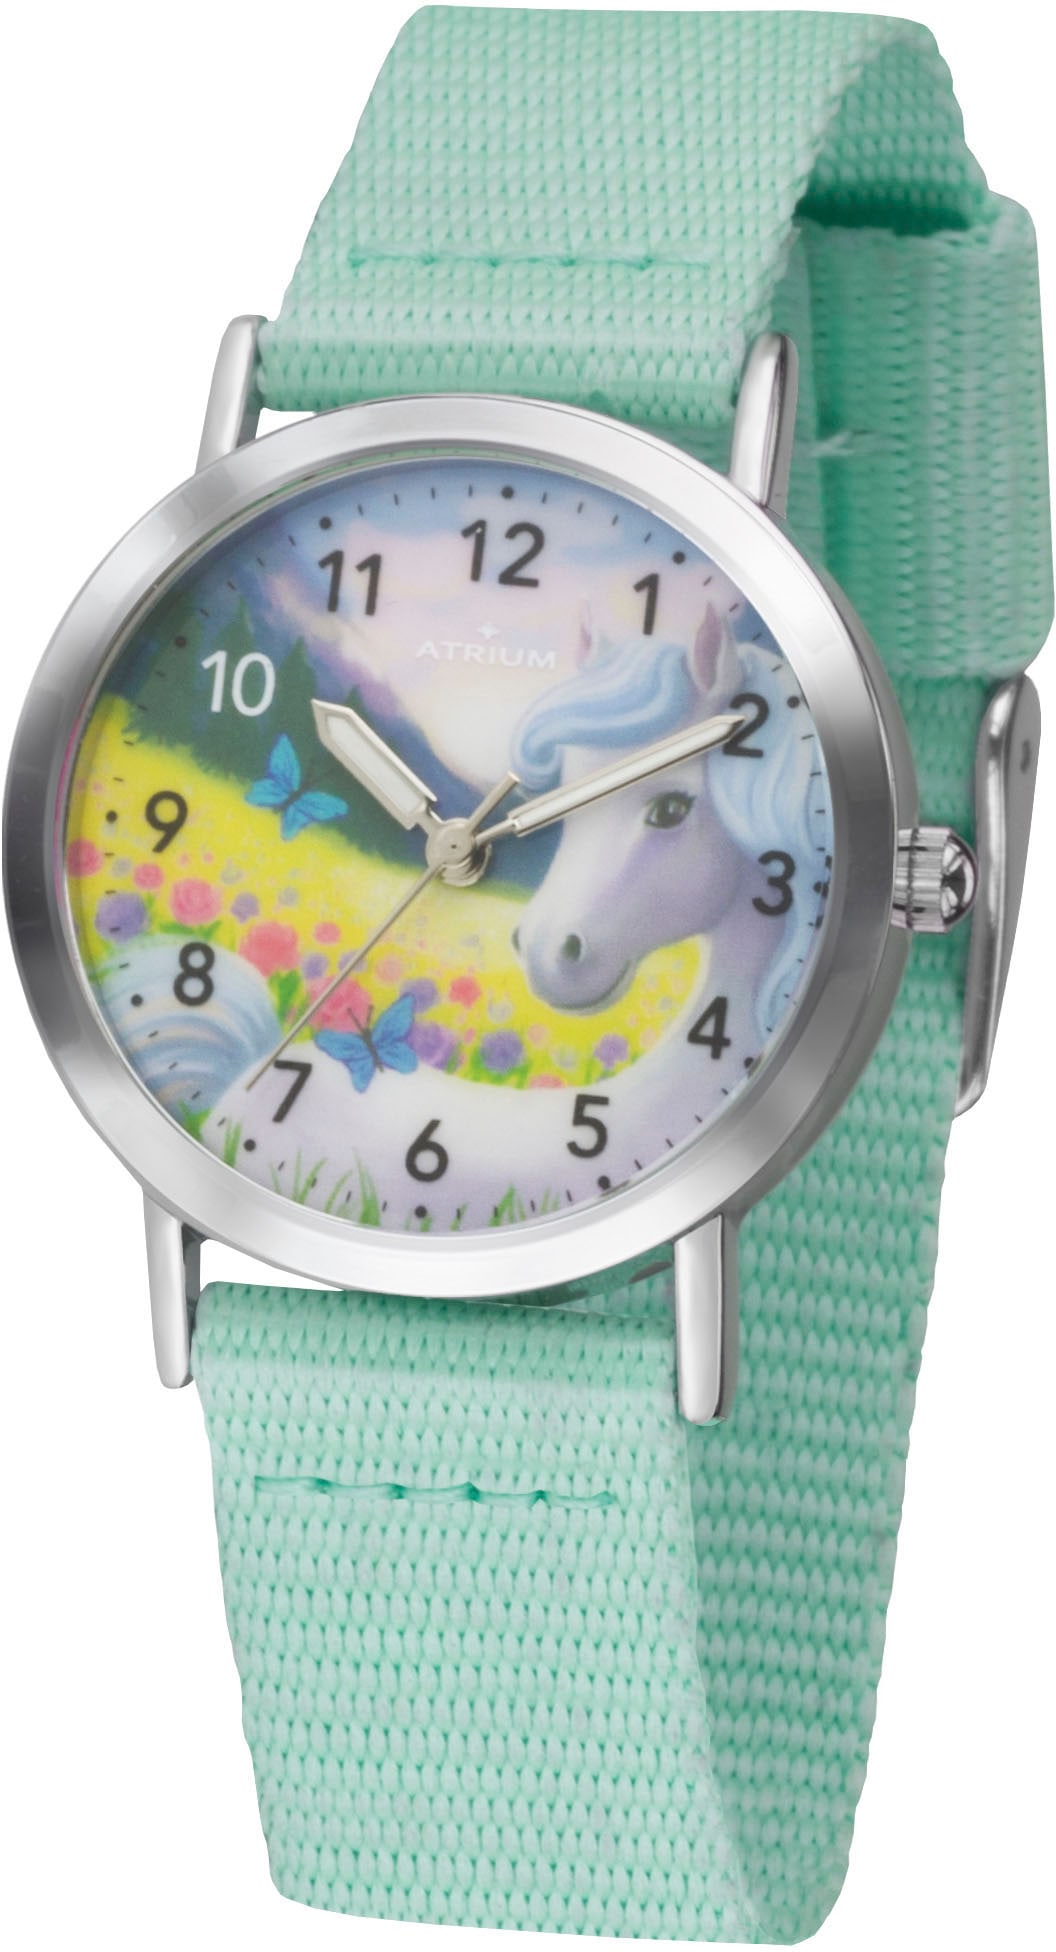 Atrium Quarzuhr »A44-13«, Armbanduhr, Kinderuhr, Mädchenenuhr, ideal auch als Geschenk